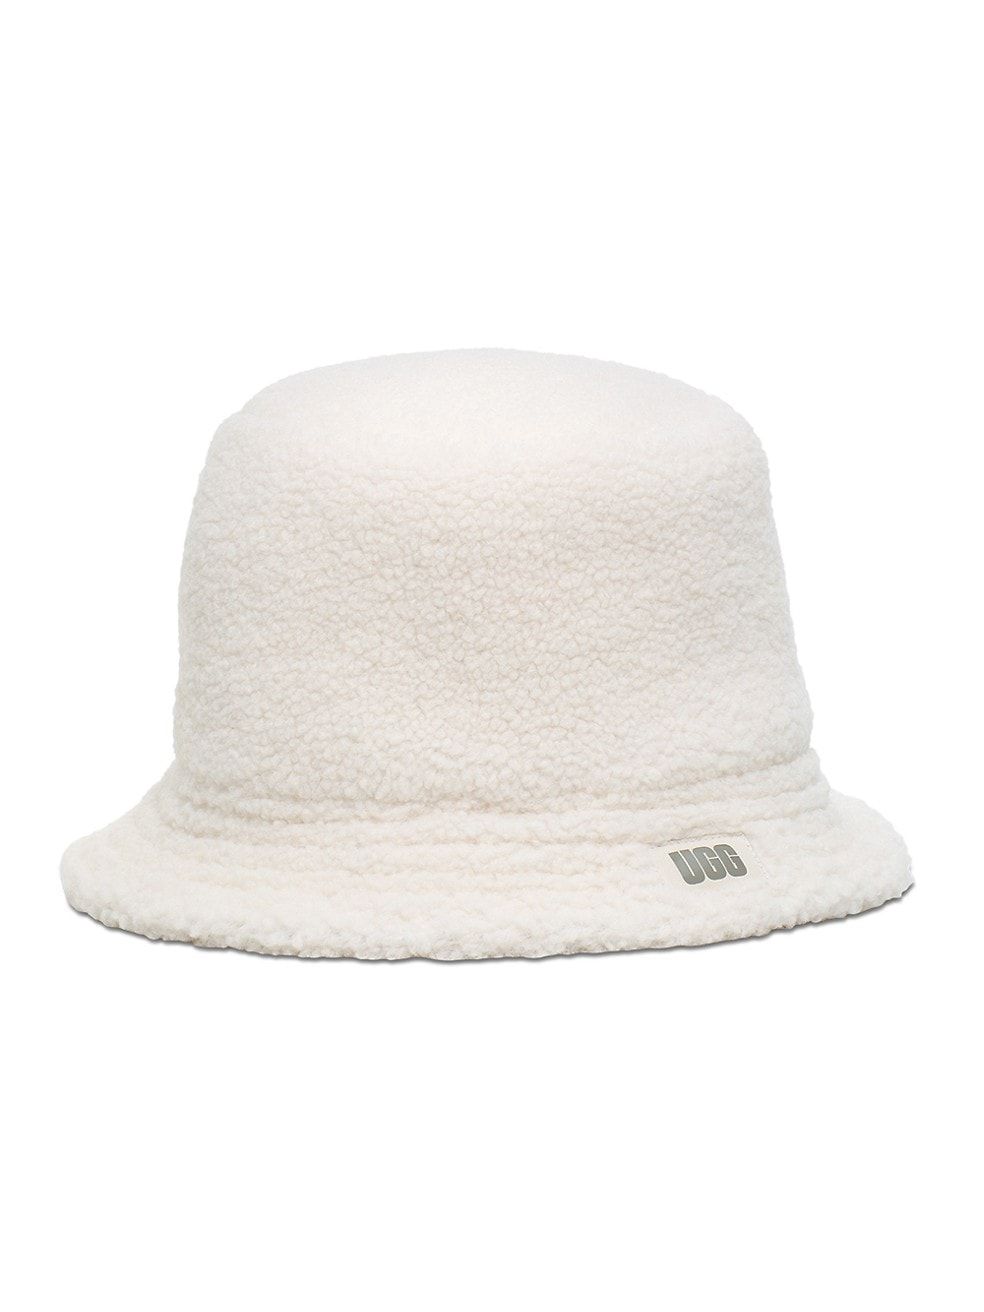 UGG Sherpa Bucket Hat | Saks Fifth Avenue